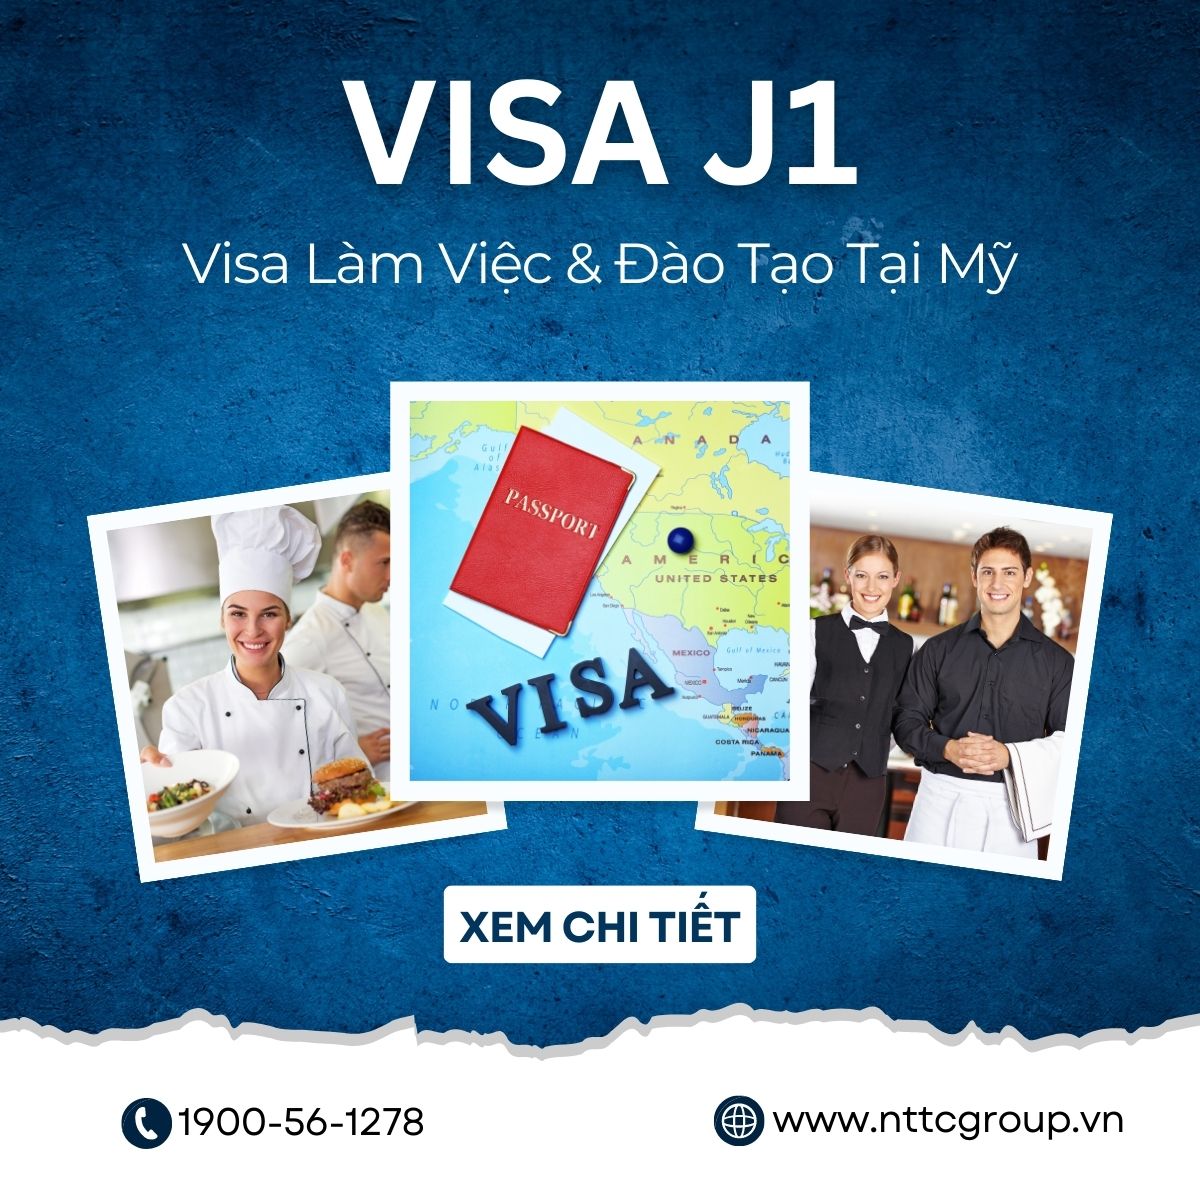 Visa J1 – Cơ hội vàng để làm việc và đào tạo tại Mỹ